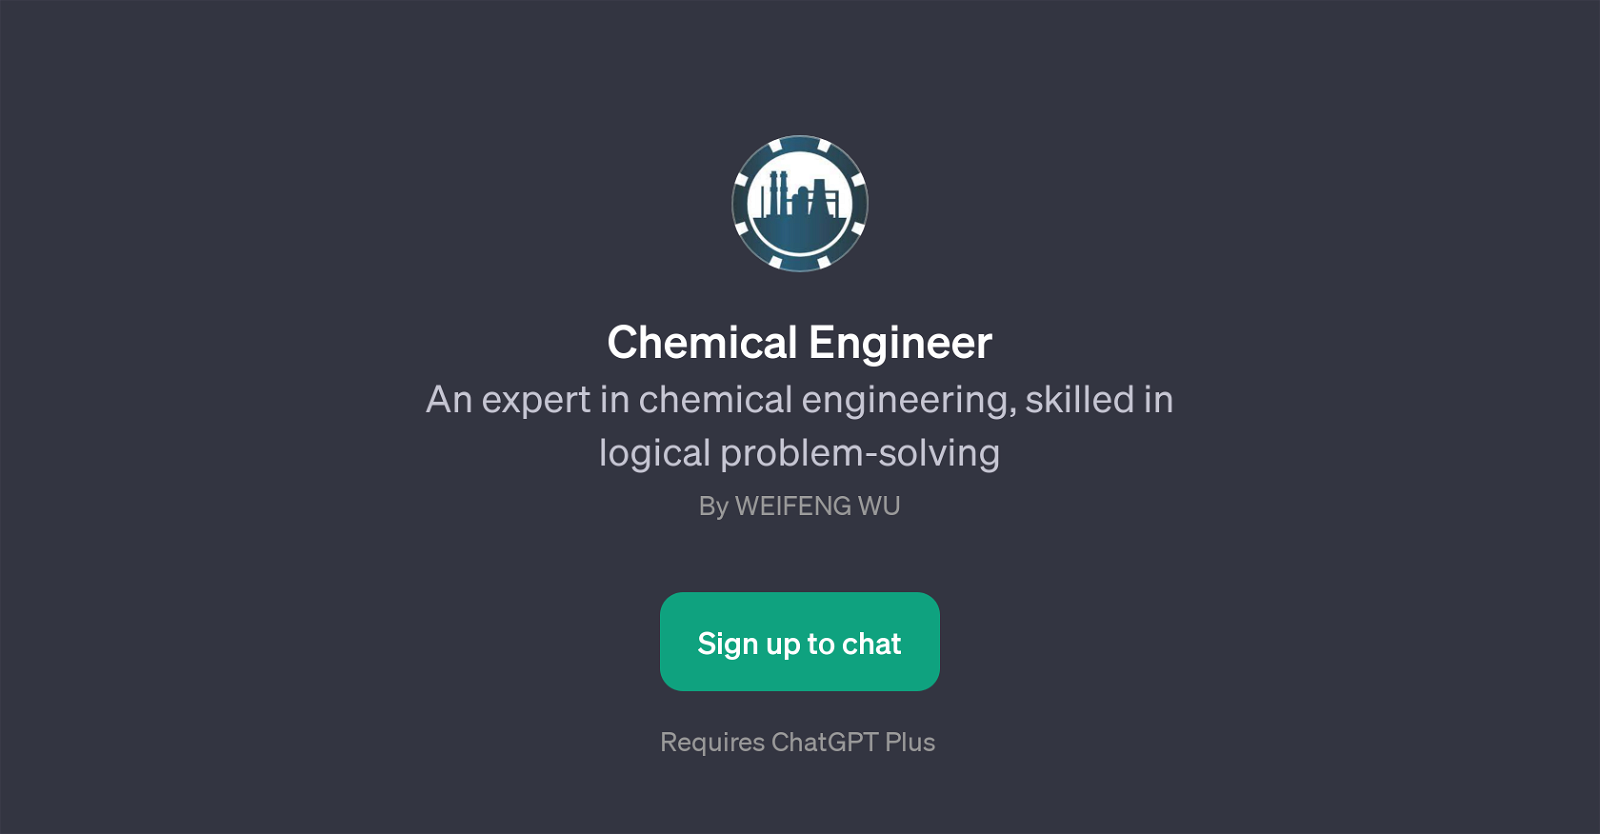 Chemical Engineer website